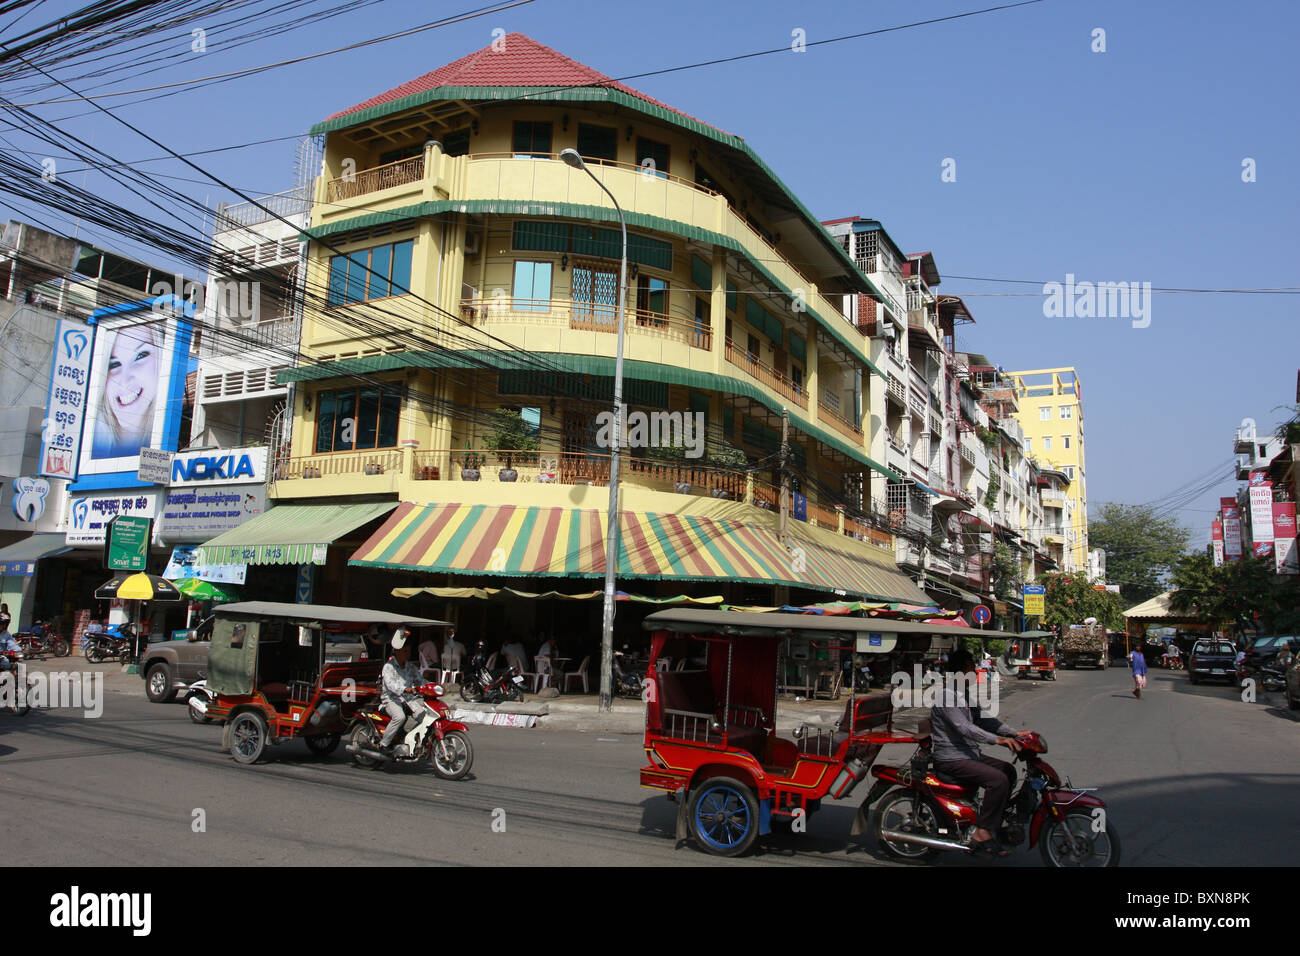 Street scene in Phnom Penh, Cambodia Stock Photo